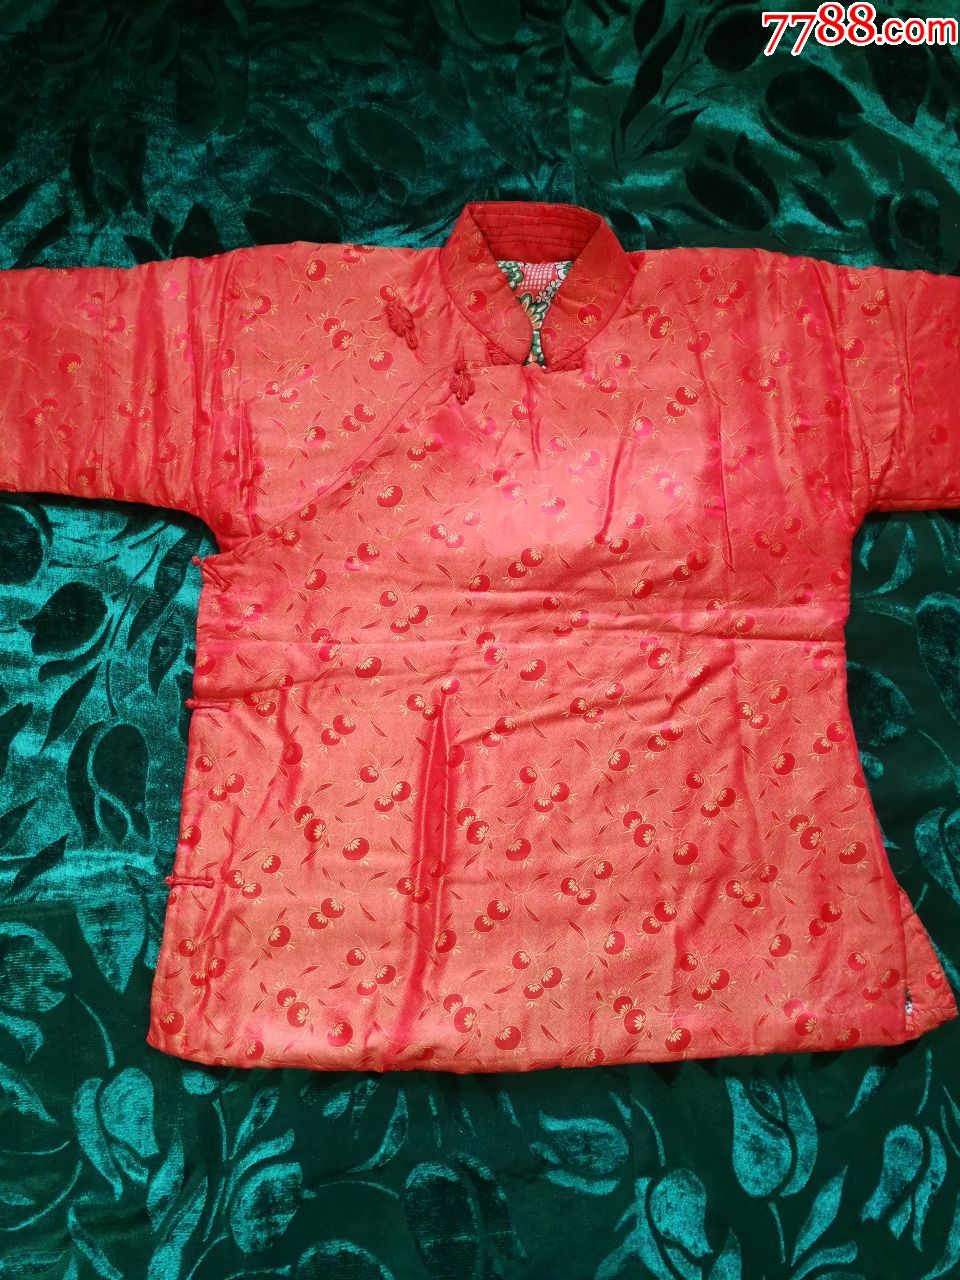 80年代的绸缎棉袄图片